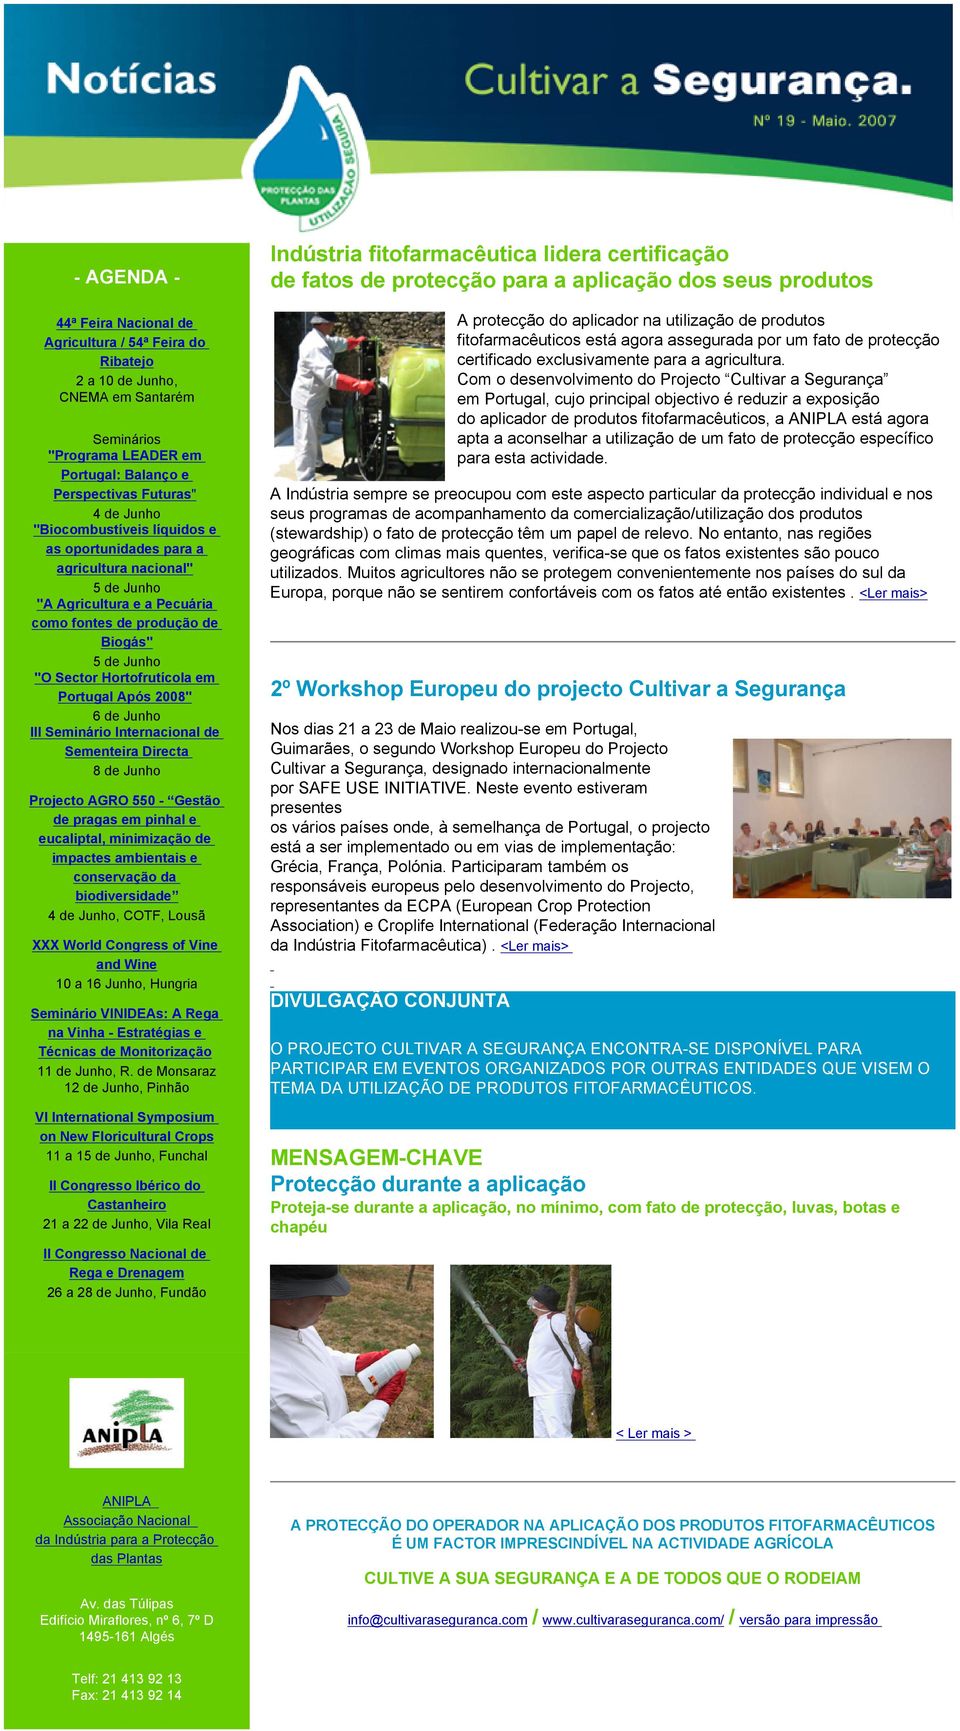 Após 2008" 6 de Junho III Seminário Internacional de Sementeira Directa 8 de Junho Projecto AGRO 550 - Gestão de pragas em pinhal e eucaliptal, minimização de impactes ambientais e conservação da